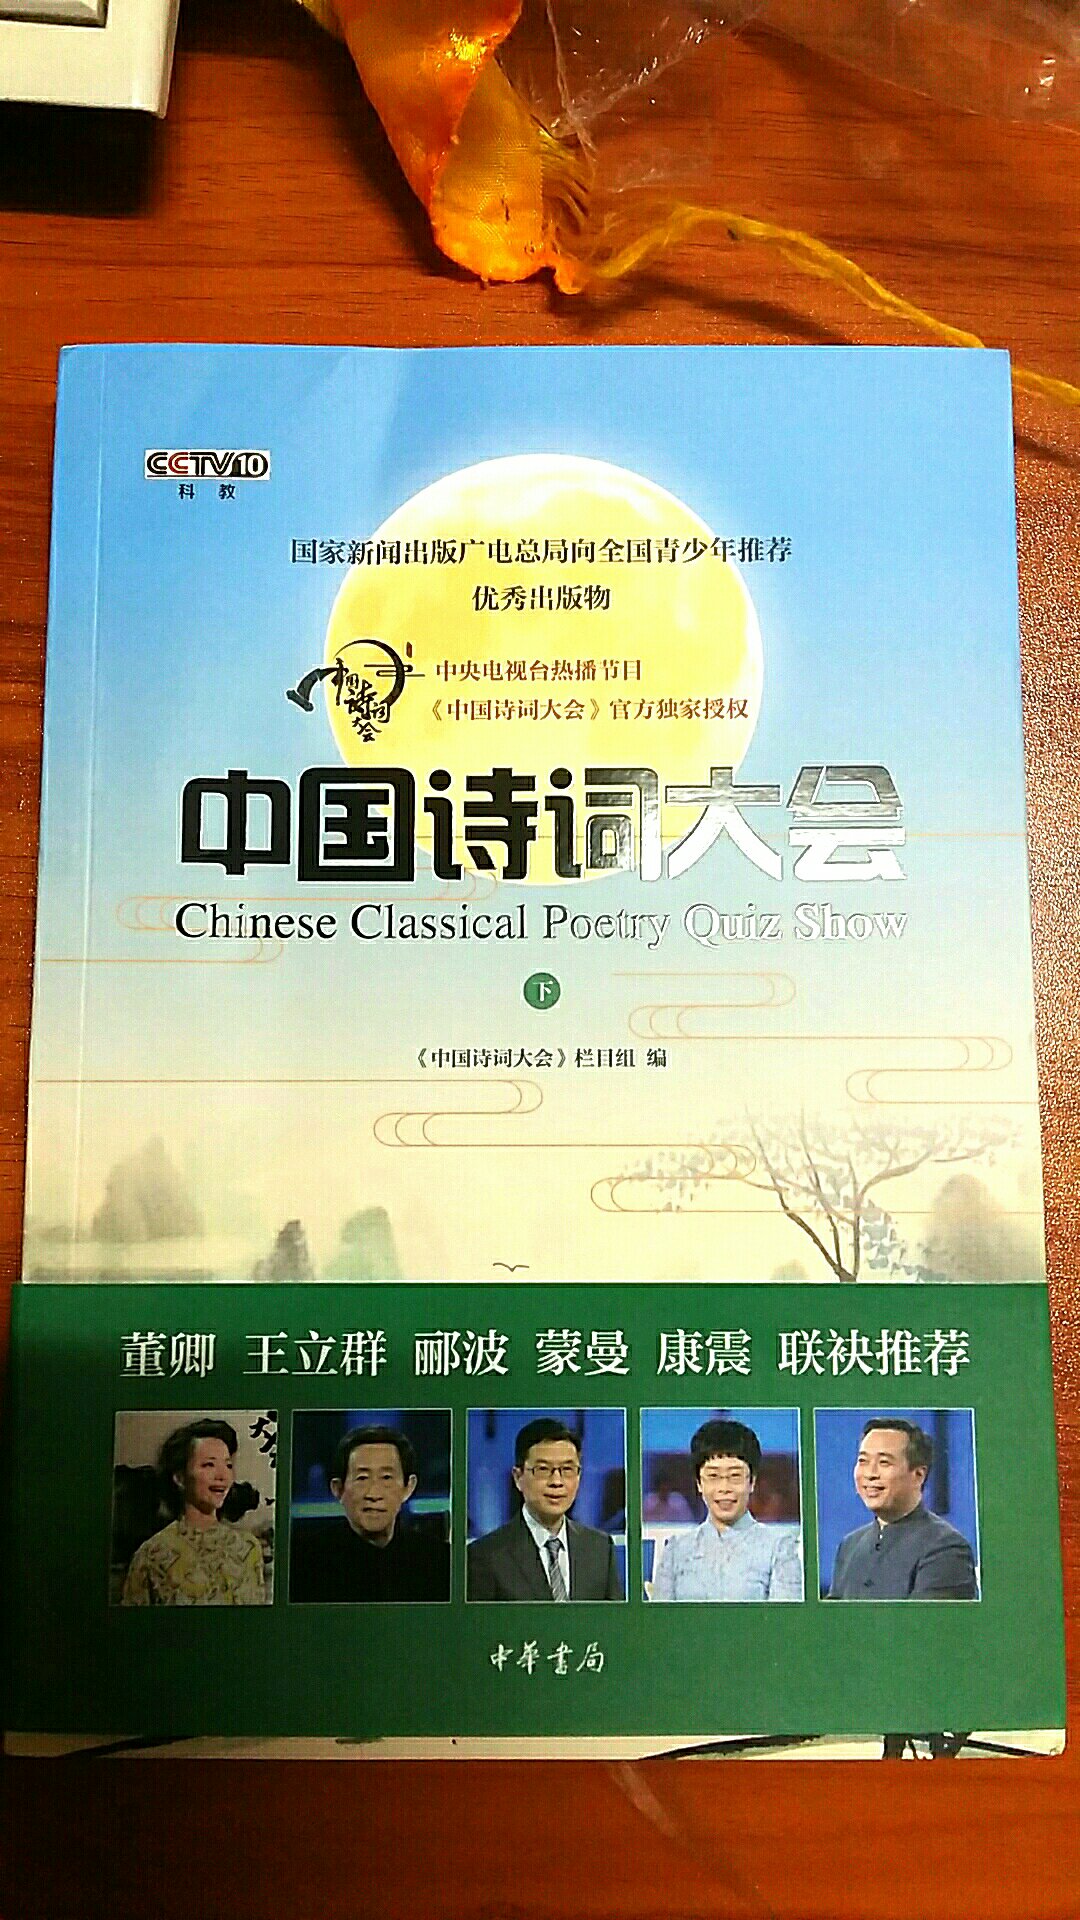 中国的传统诗词有种意境美，希望自己以后能够多提高学习，书的装帧设计都是一流的